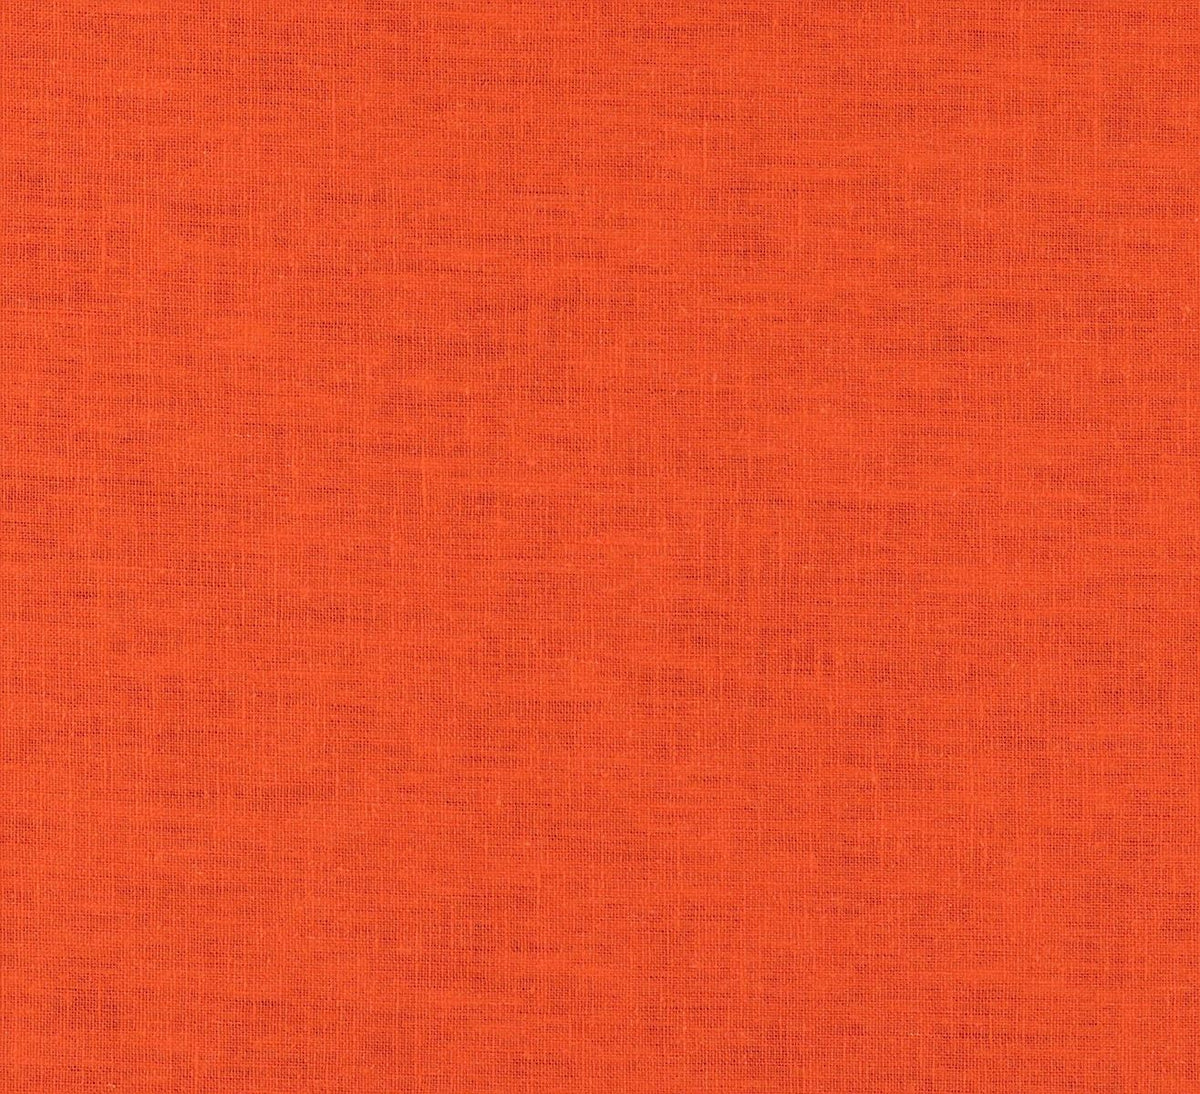 Night curtain orange Edda